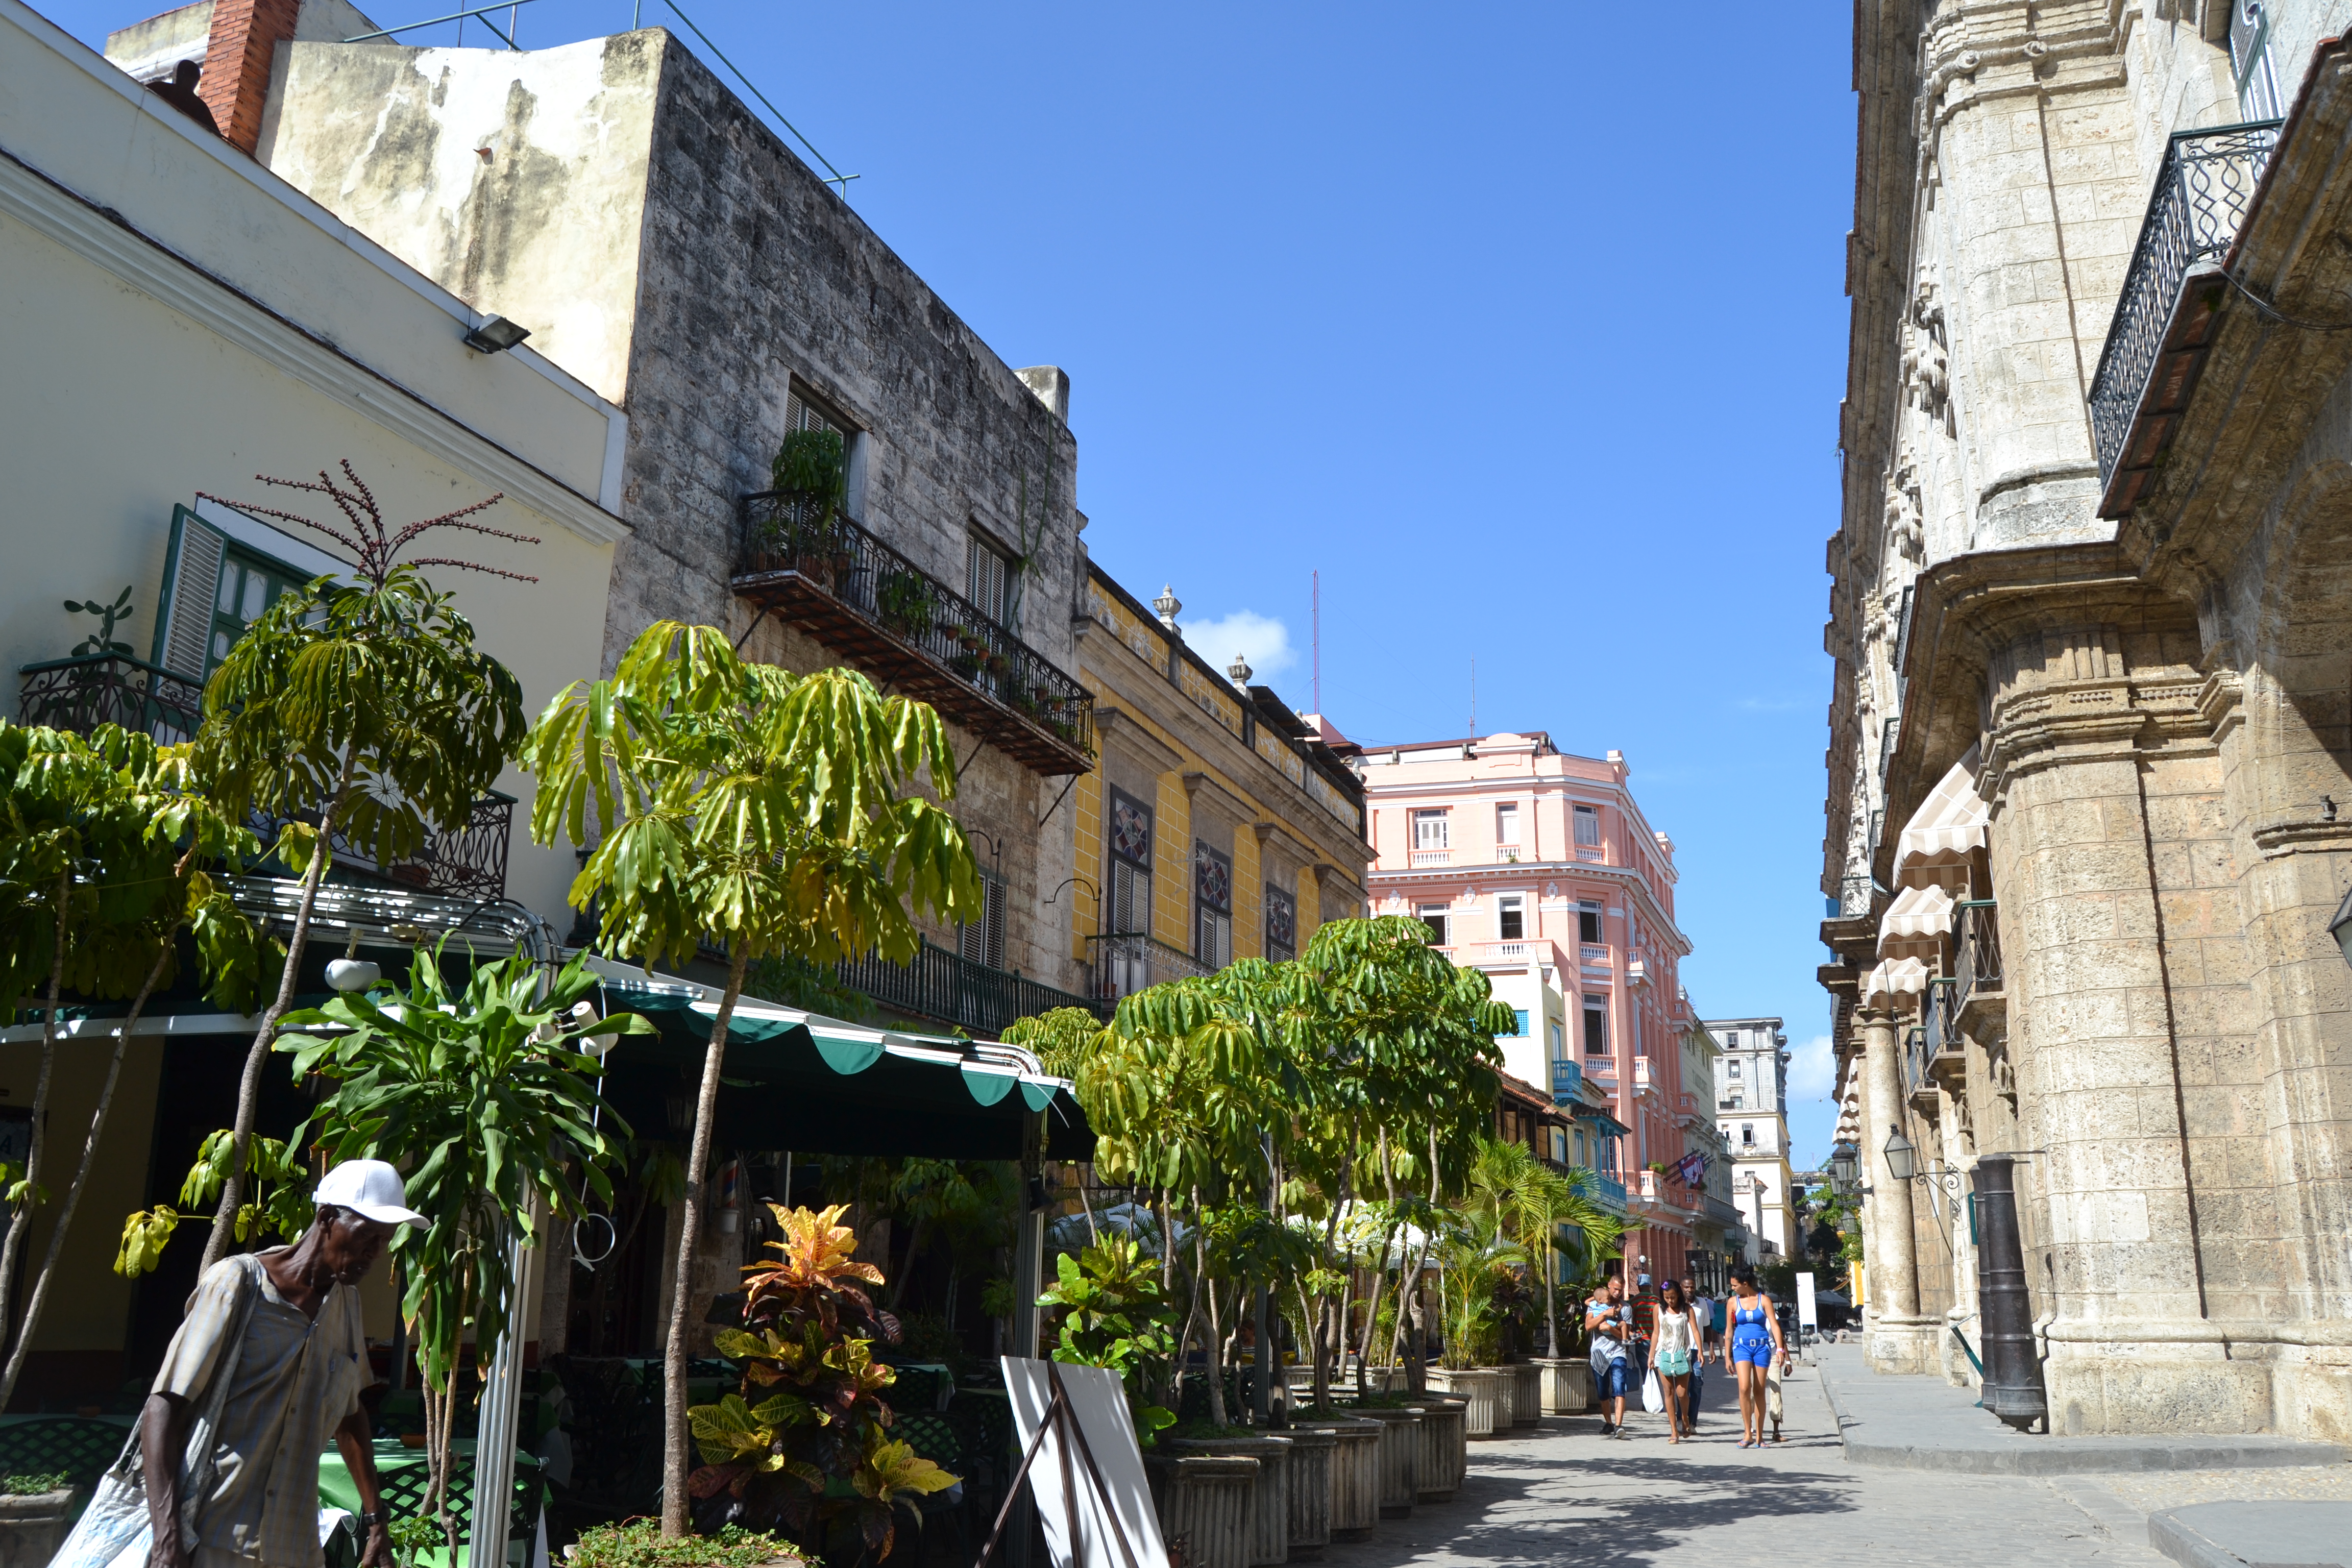 Calle Obispo, La Habana, Cuba